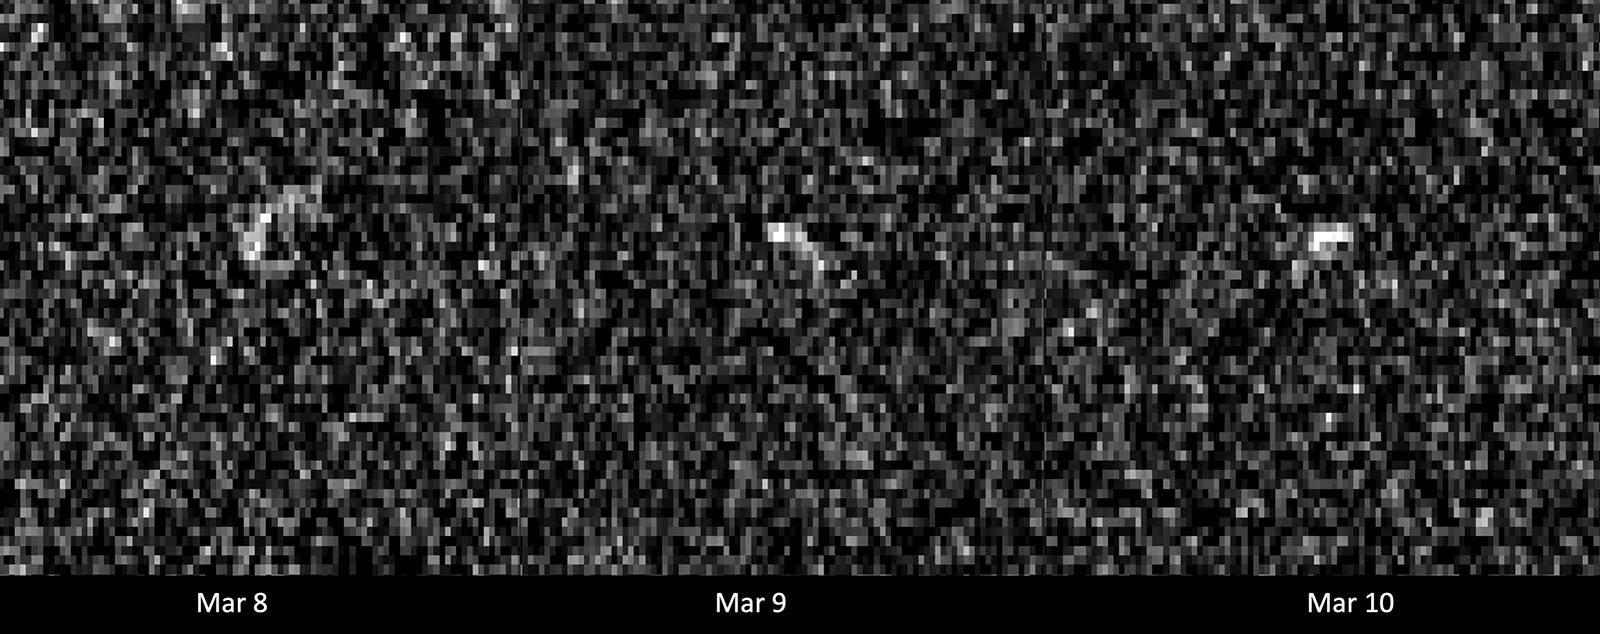 Immagini radar realizzate dalla Nasa dell’asteroide Apophis